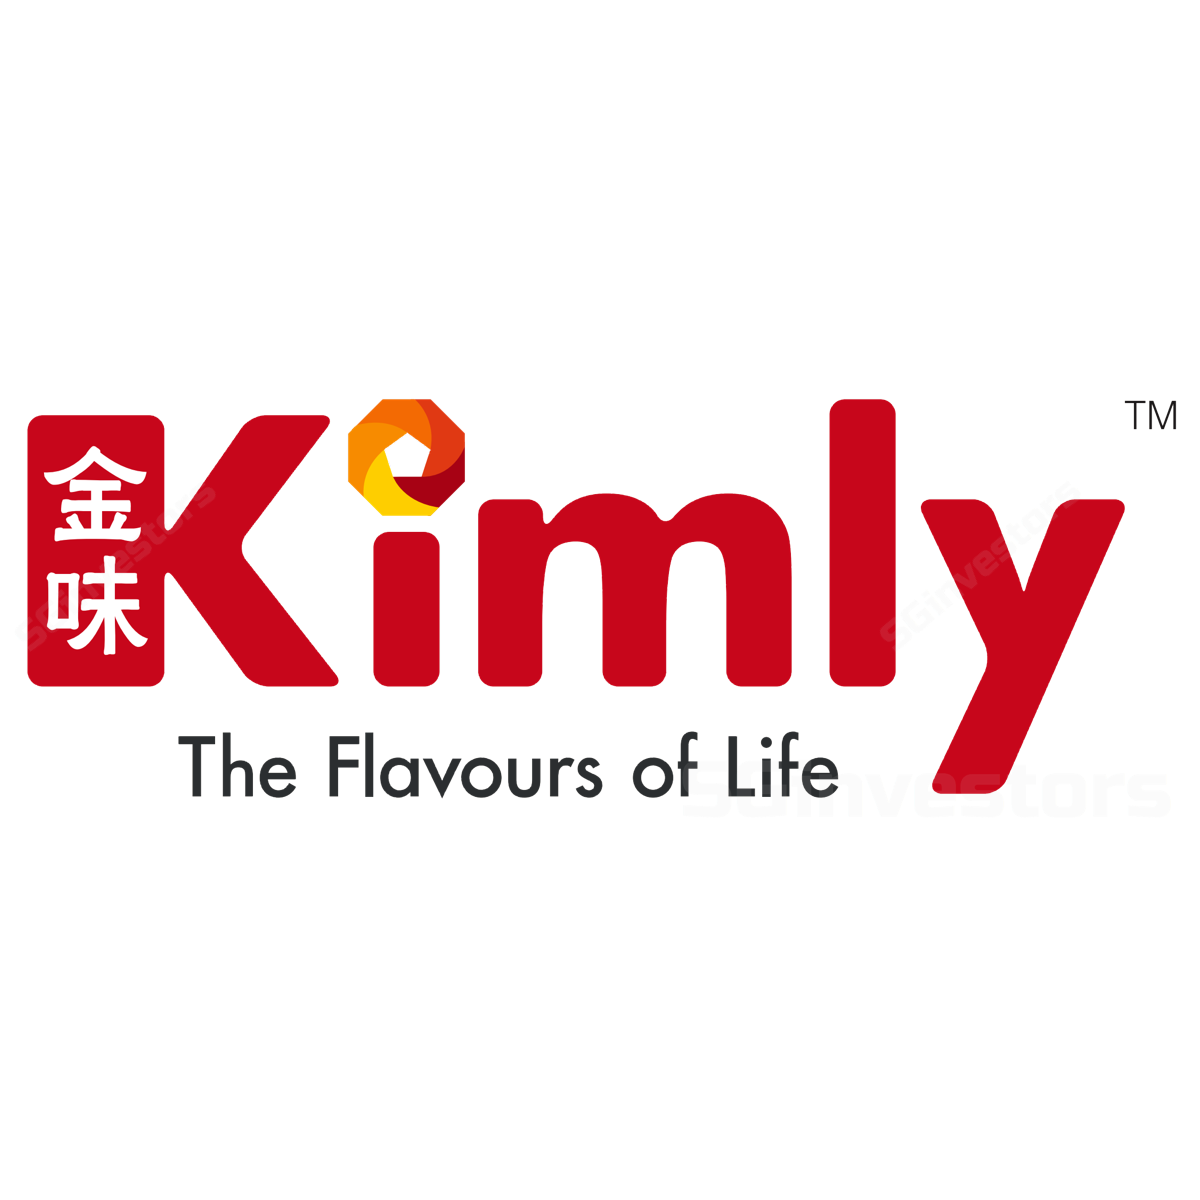 Kimly (KMLY SP) - UOB Kay Hian 2017-12-07: Operationally Resilient; Maintain BUY On Share Price Pullback